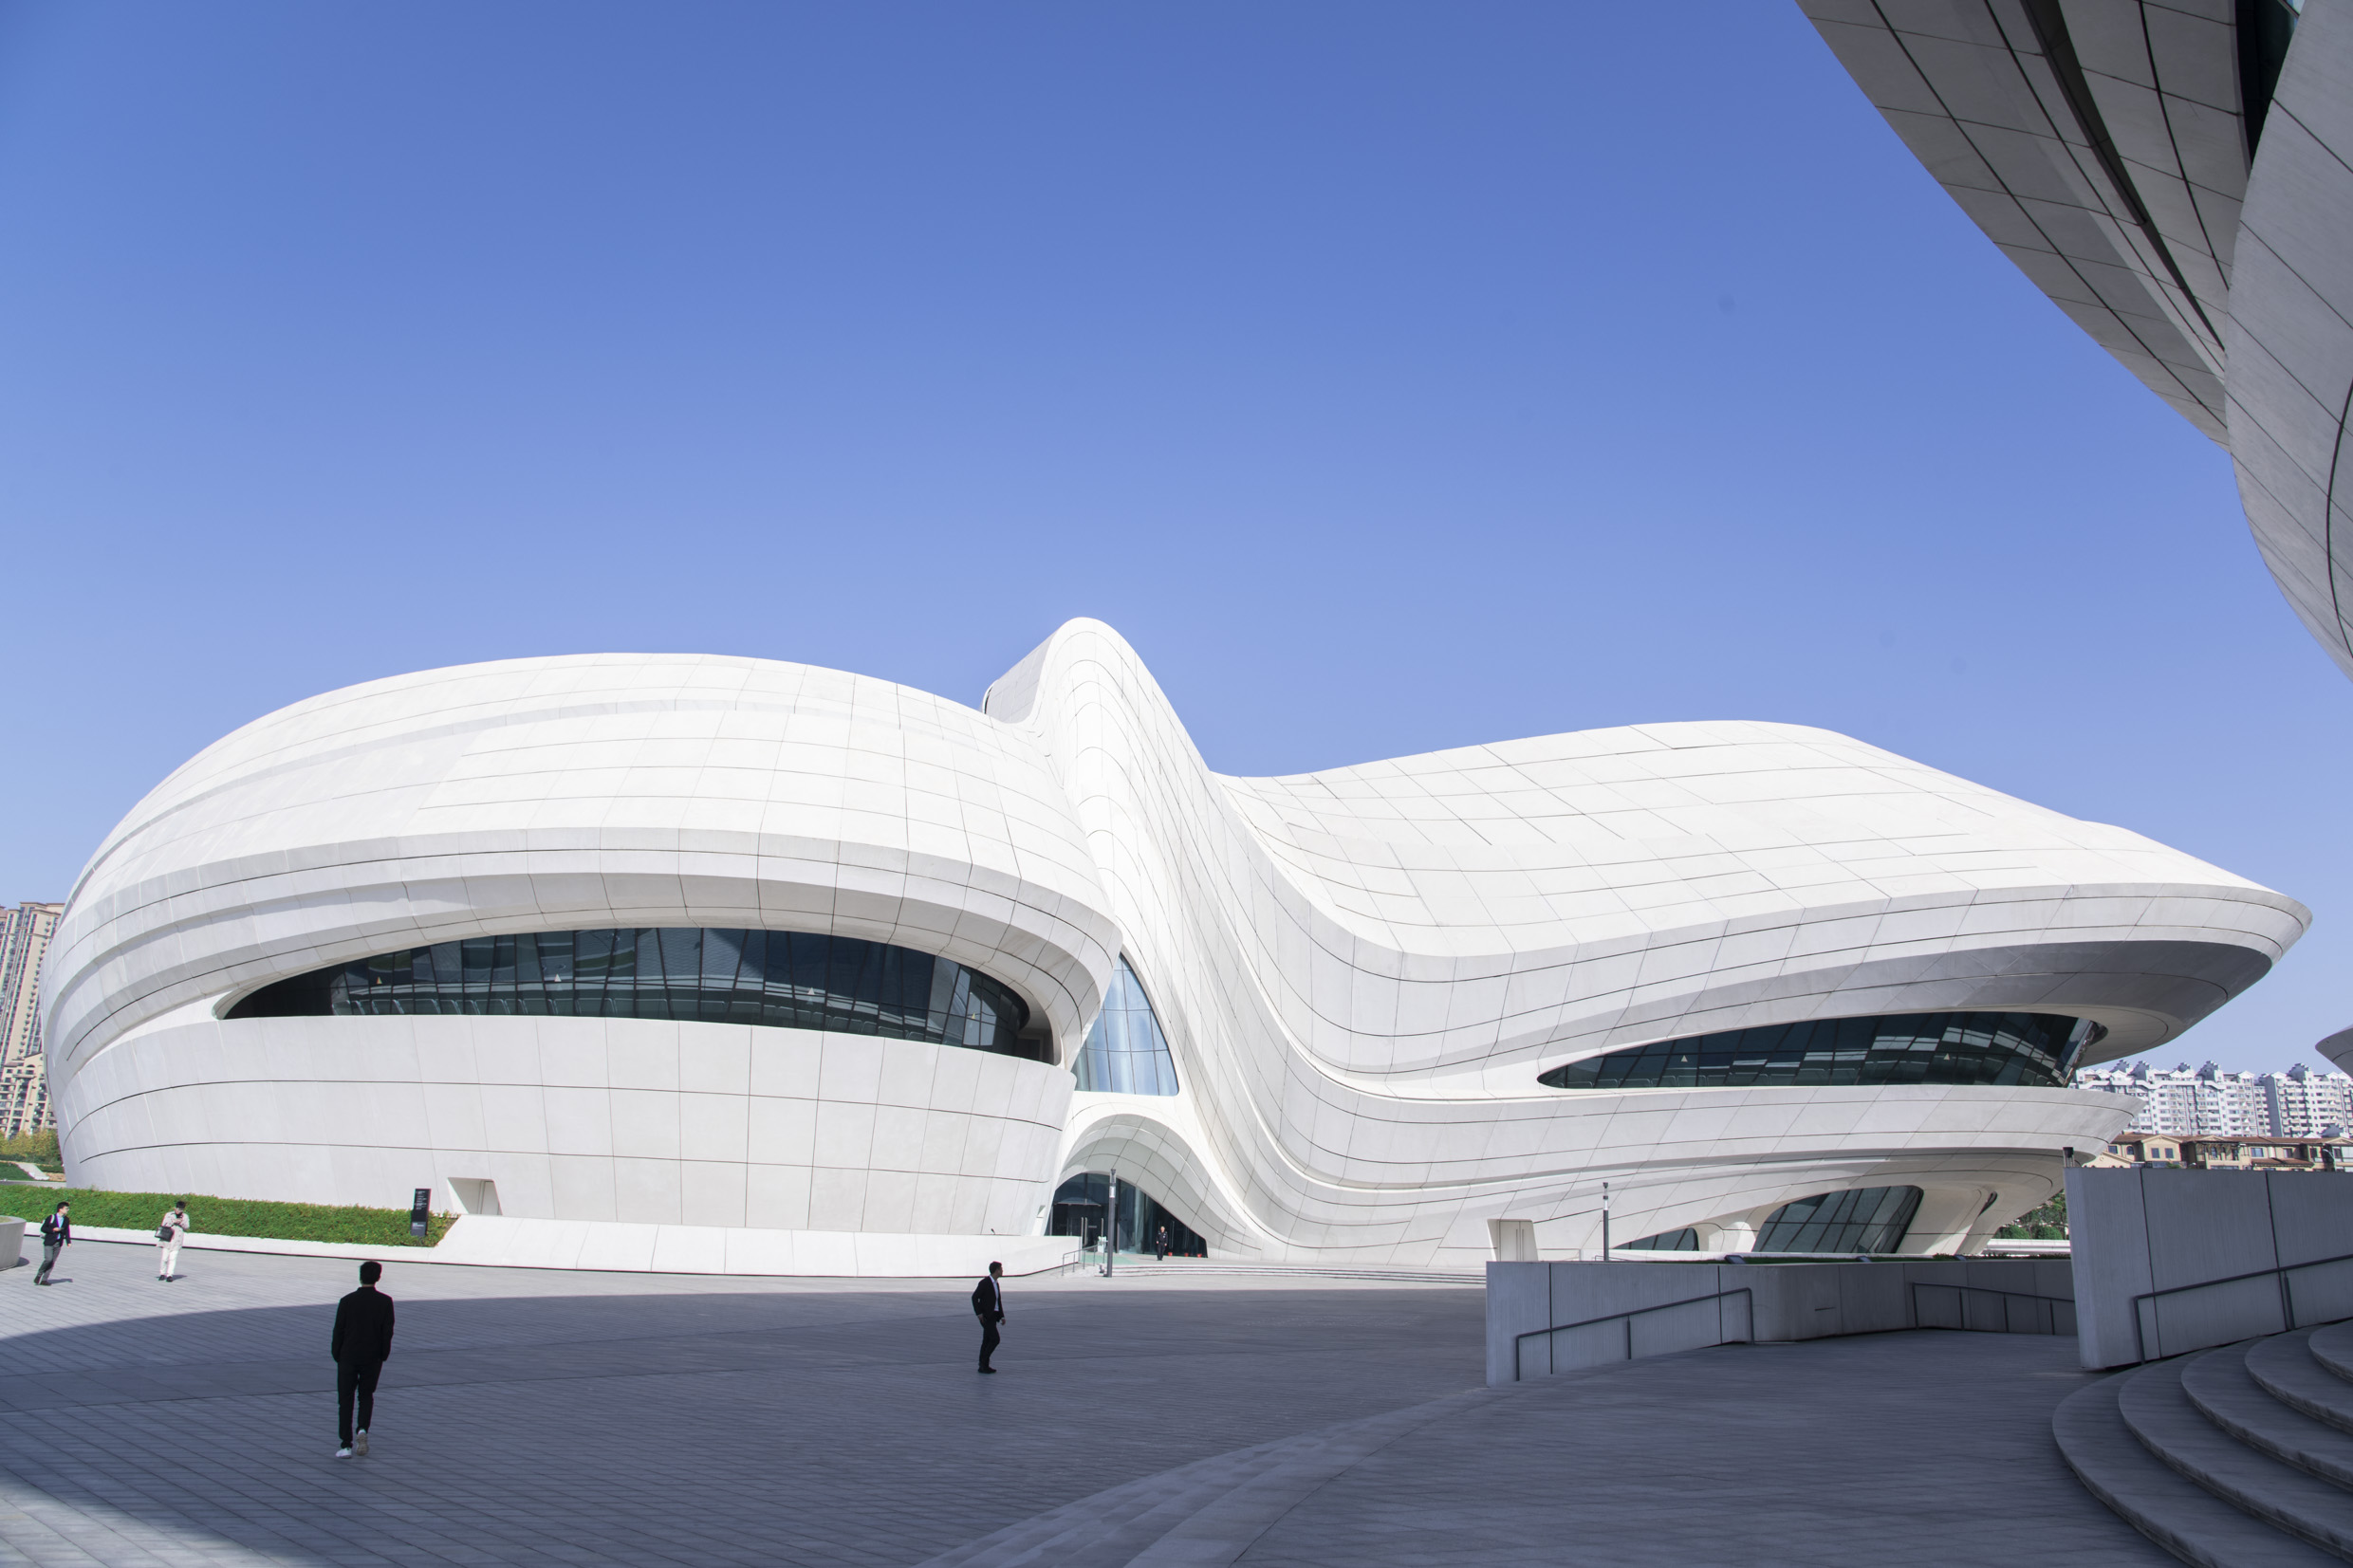 长沙梅溪湖国际文化艺术中心艺术馆作为全球著名建筑设计师扎哈